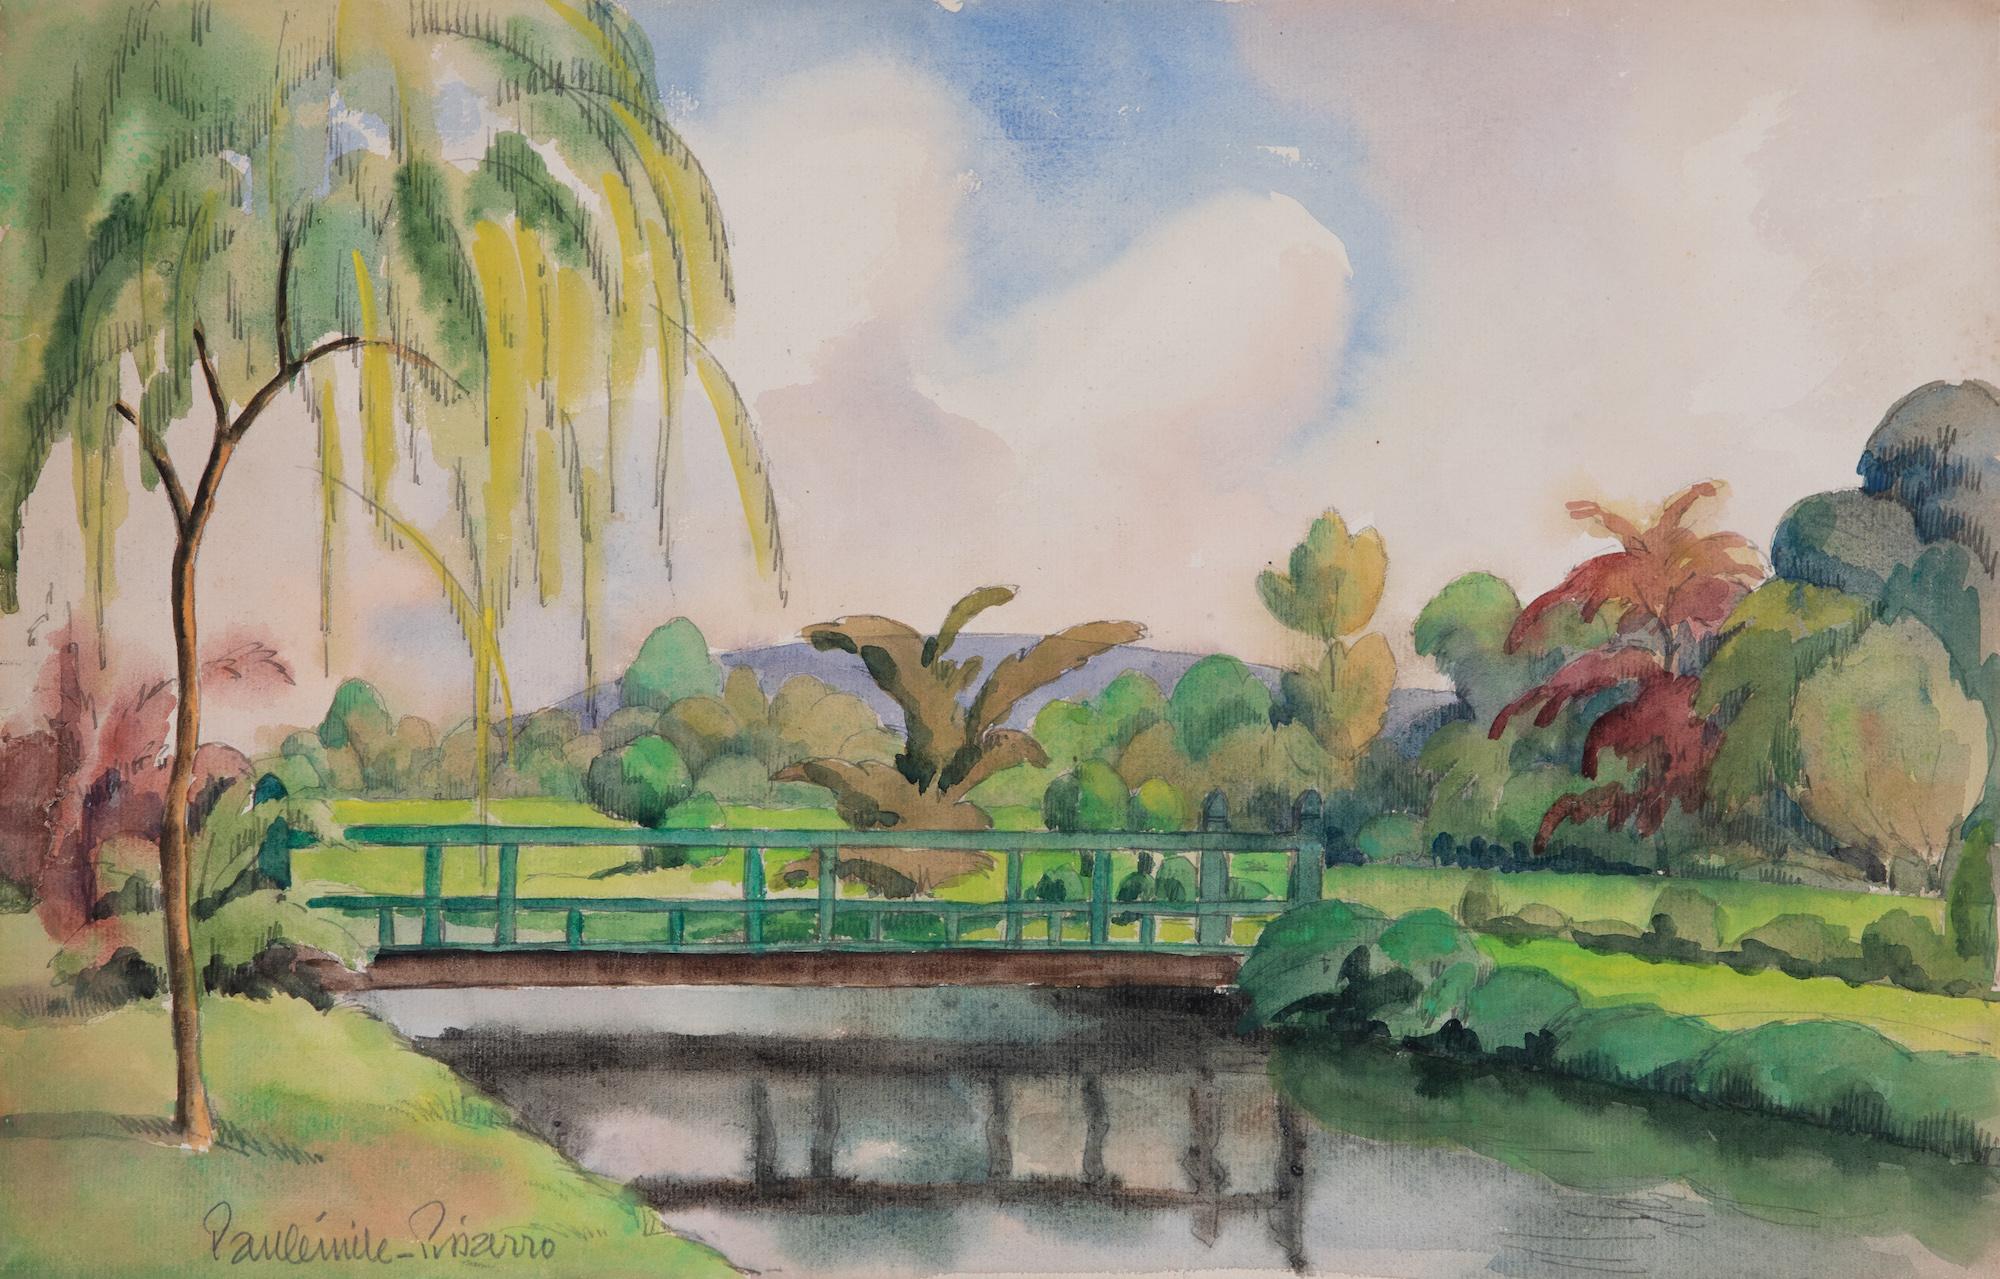 Paul Emile Pissarro Landscape Art - Scène de rivière, près de Lyons-la-Forêt by Paulémile Pissarro - Watercolour